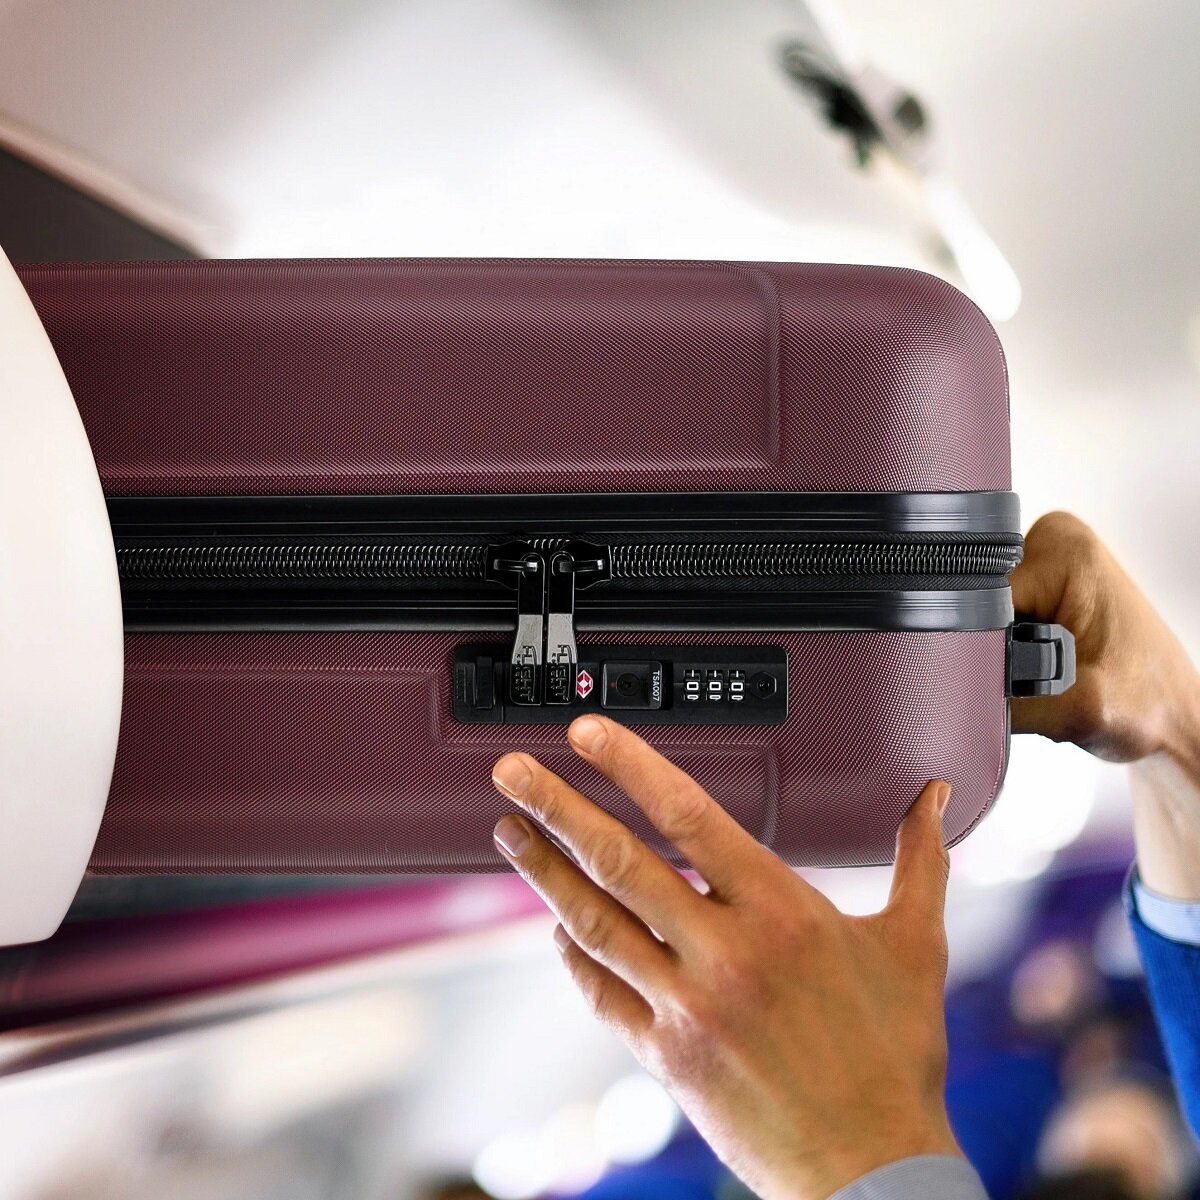 Walizka Anpa mała granatowa  wkładanie  walizki w kabinie samolotu w miejsce na bagaże nad fotelem